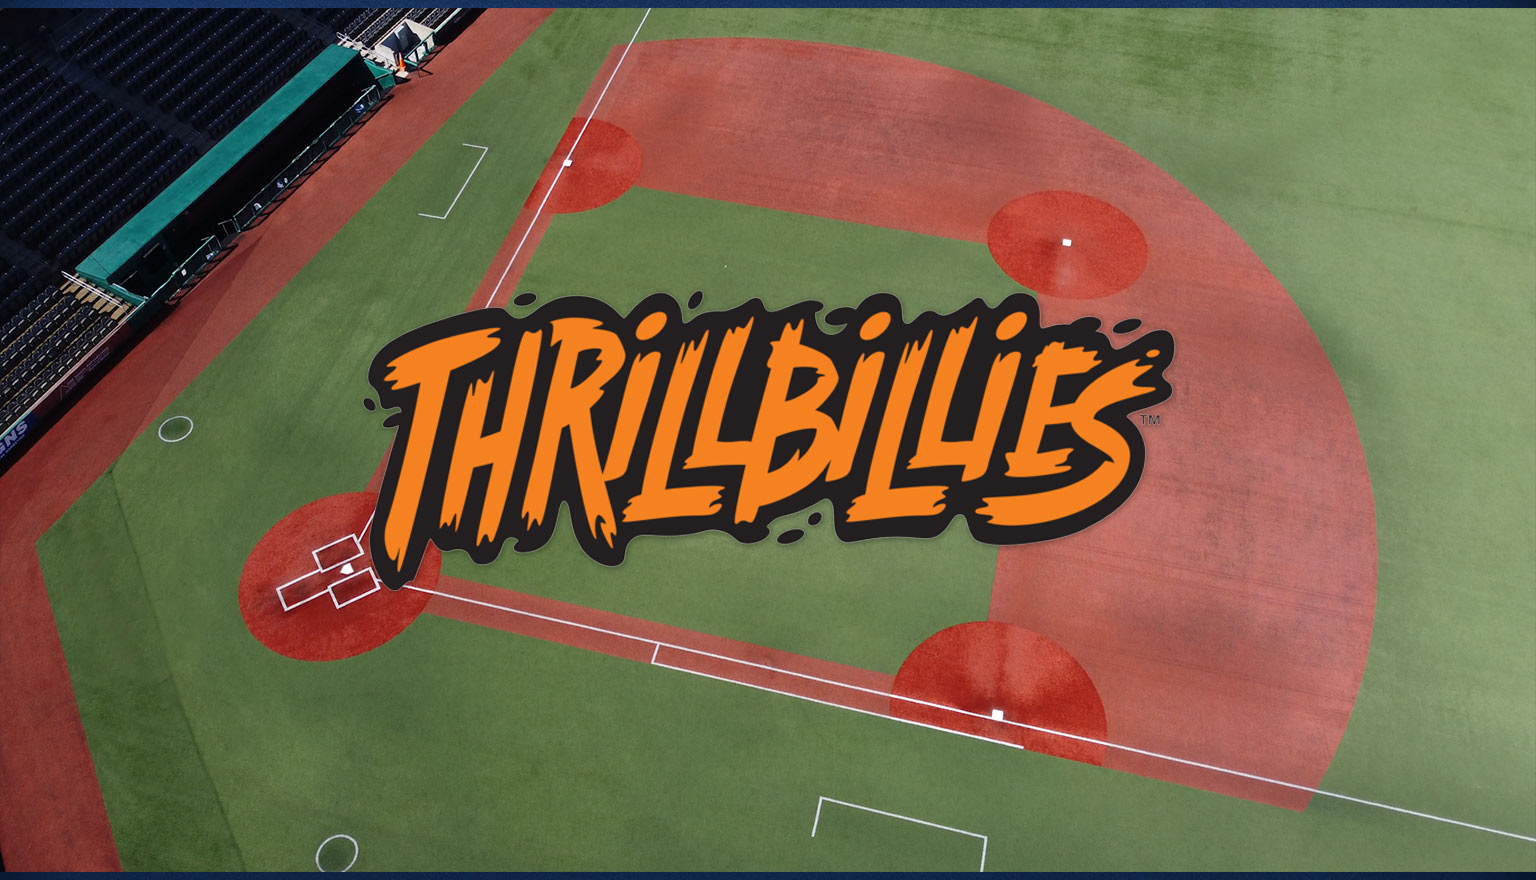 Thrillbillies-baseball-field-Marion-Illinois